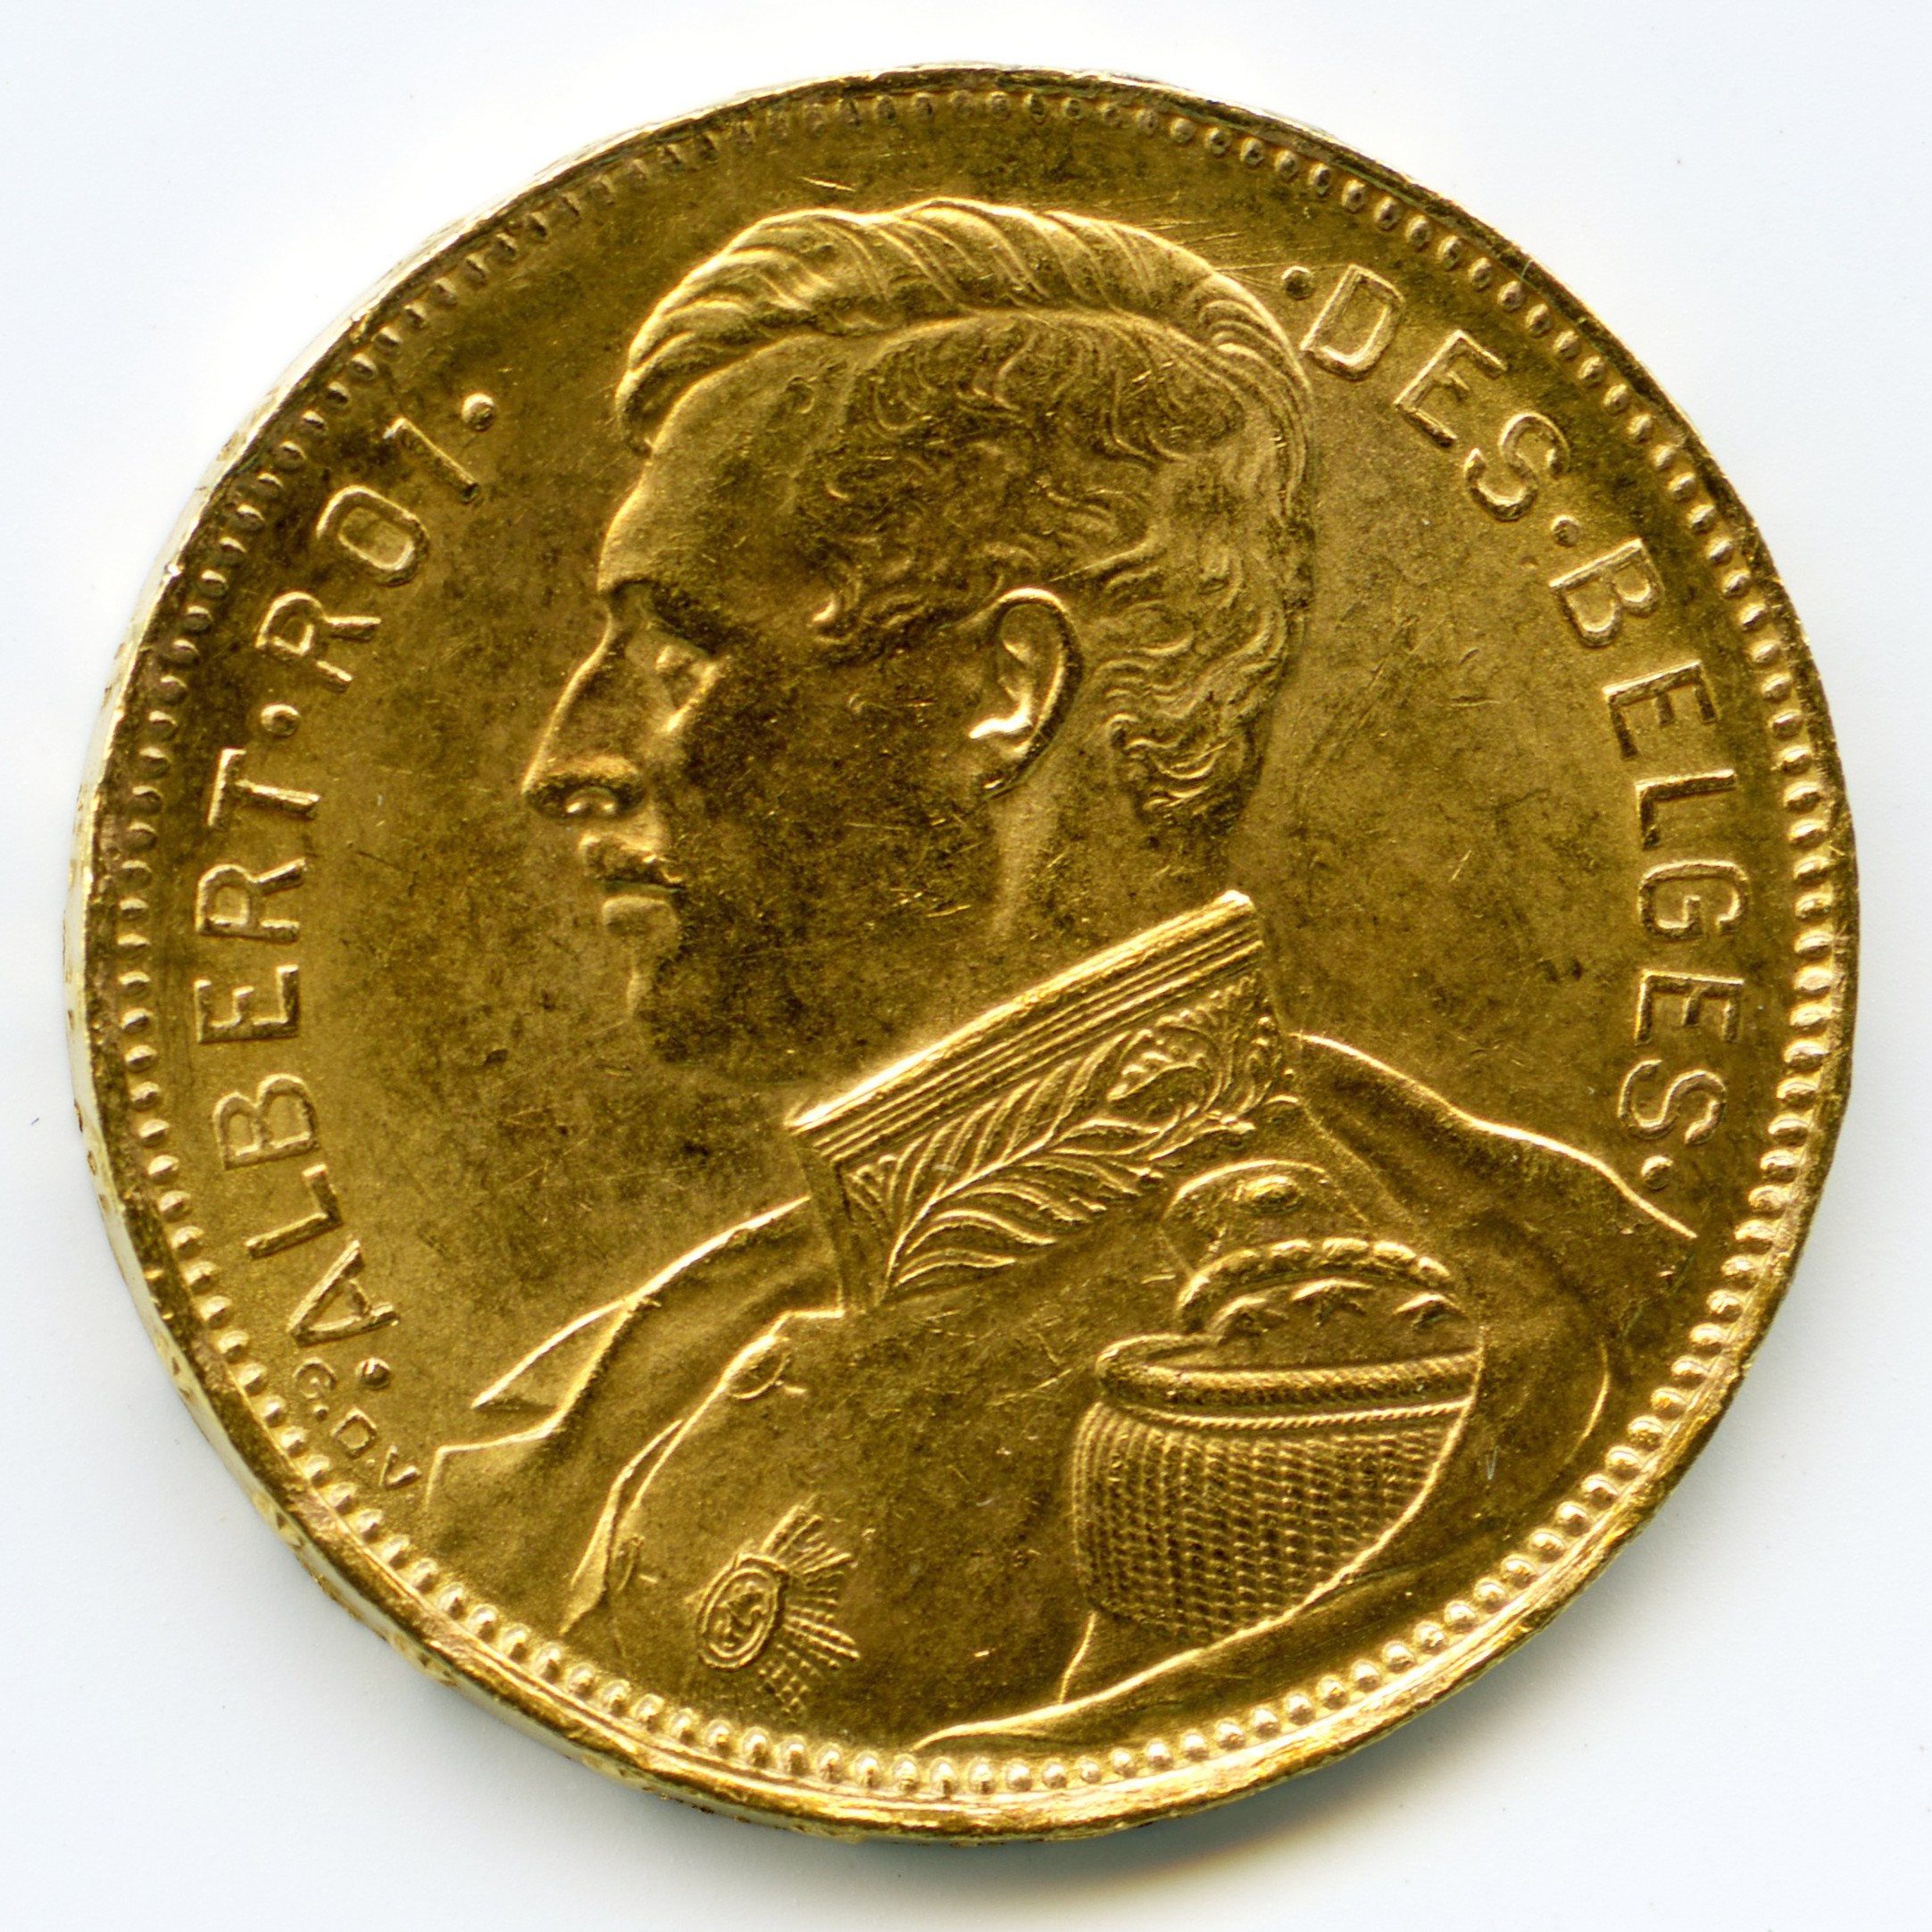 Belgique - 20 Francs - 1914 avers